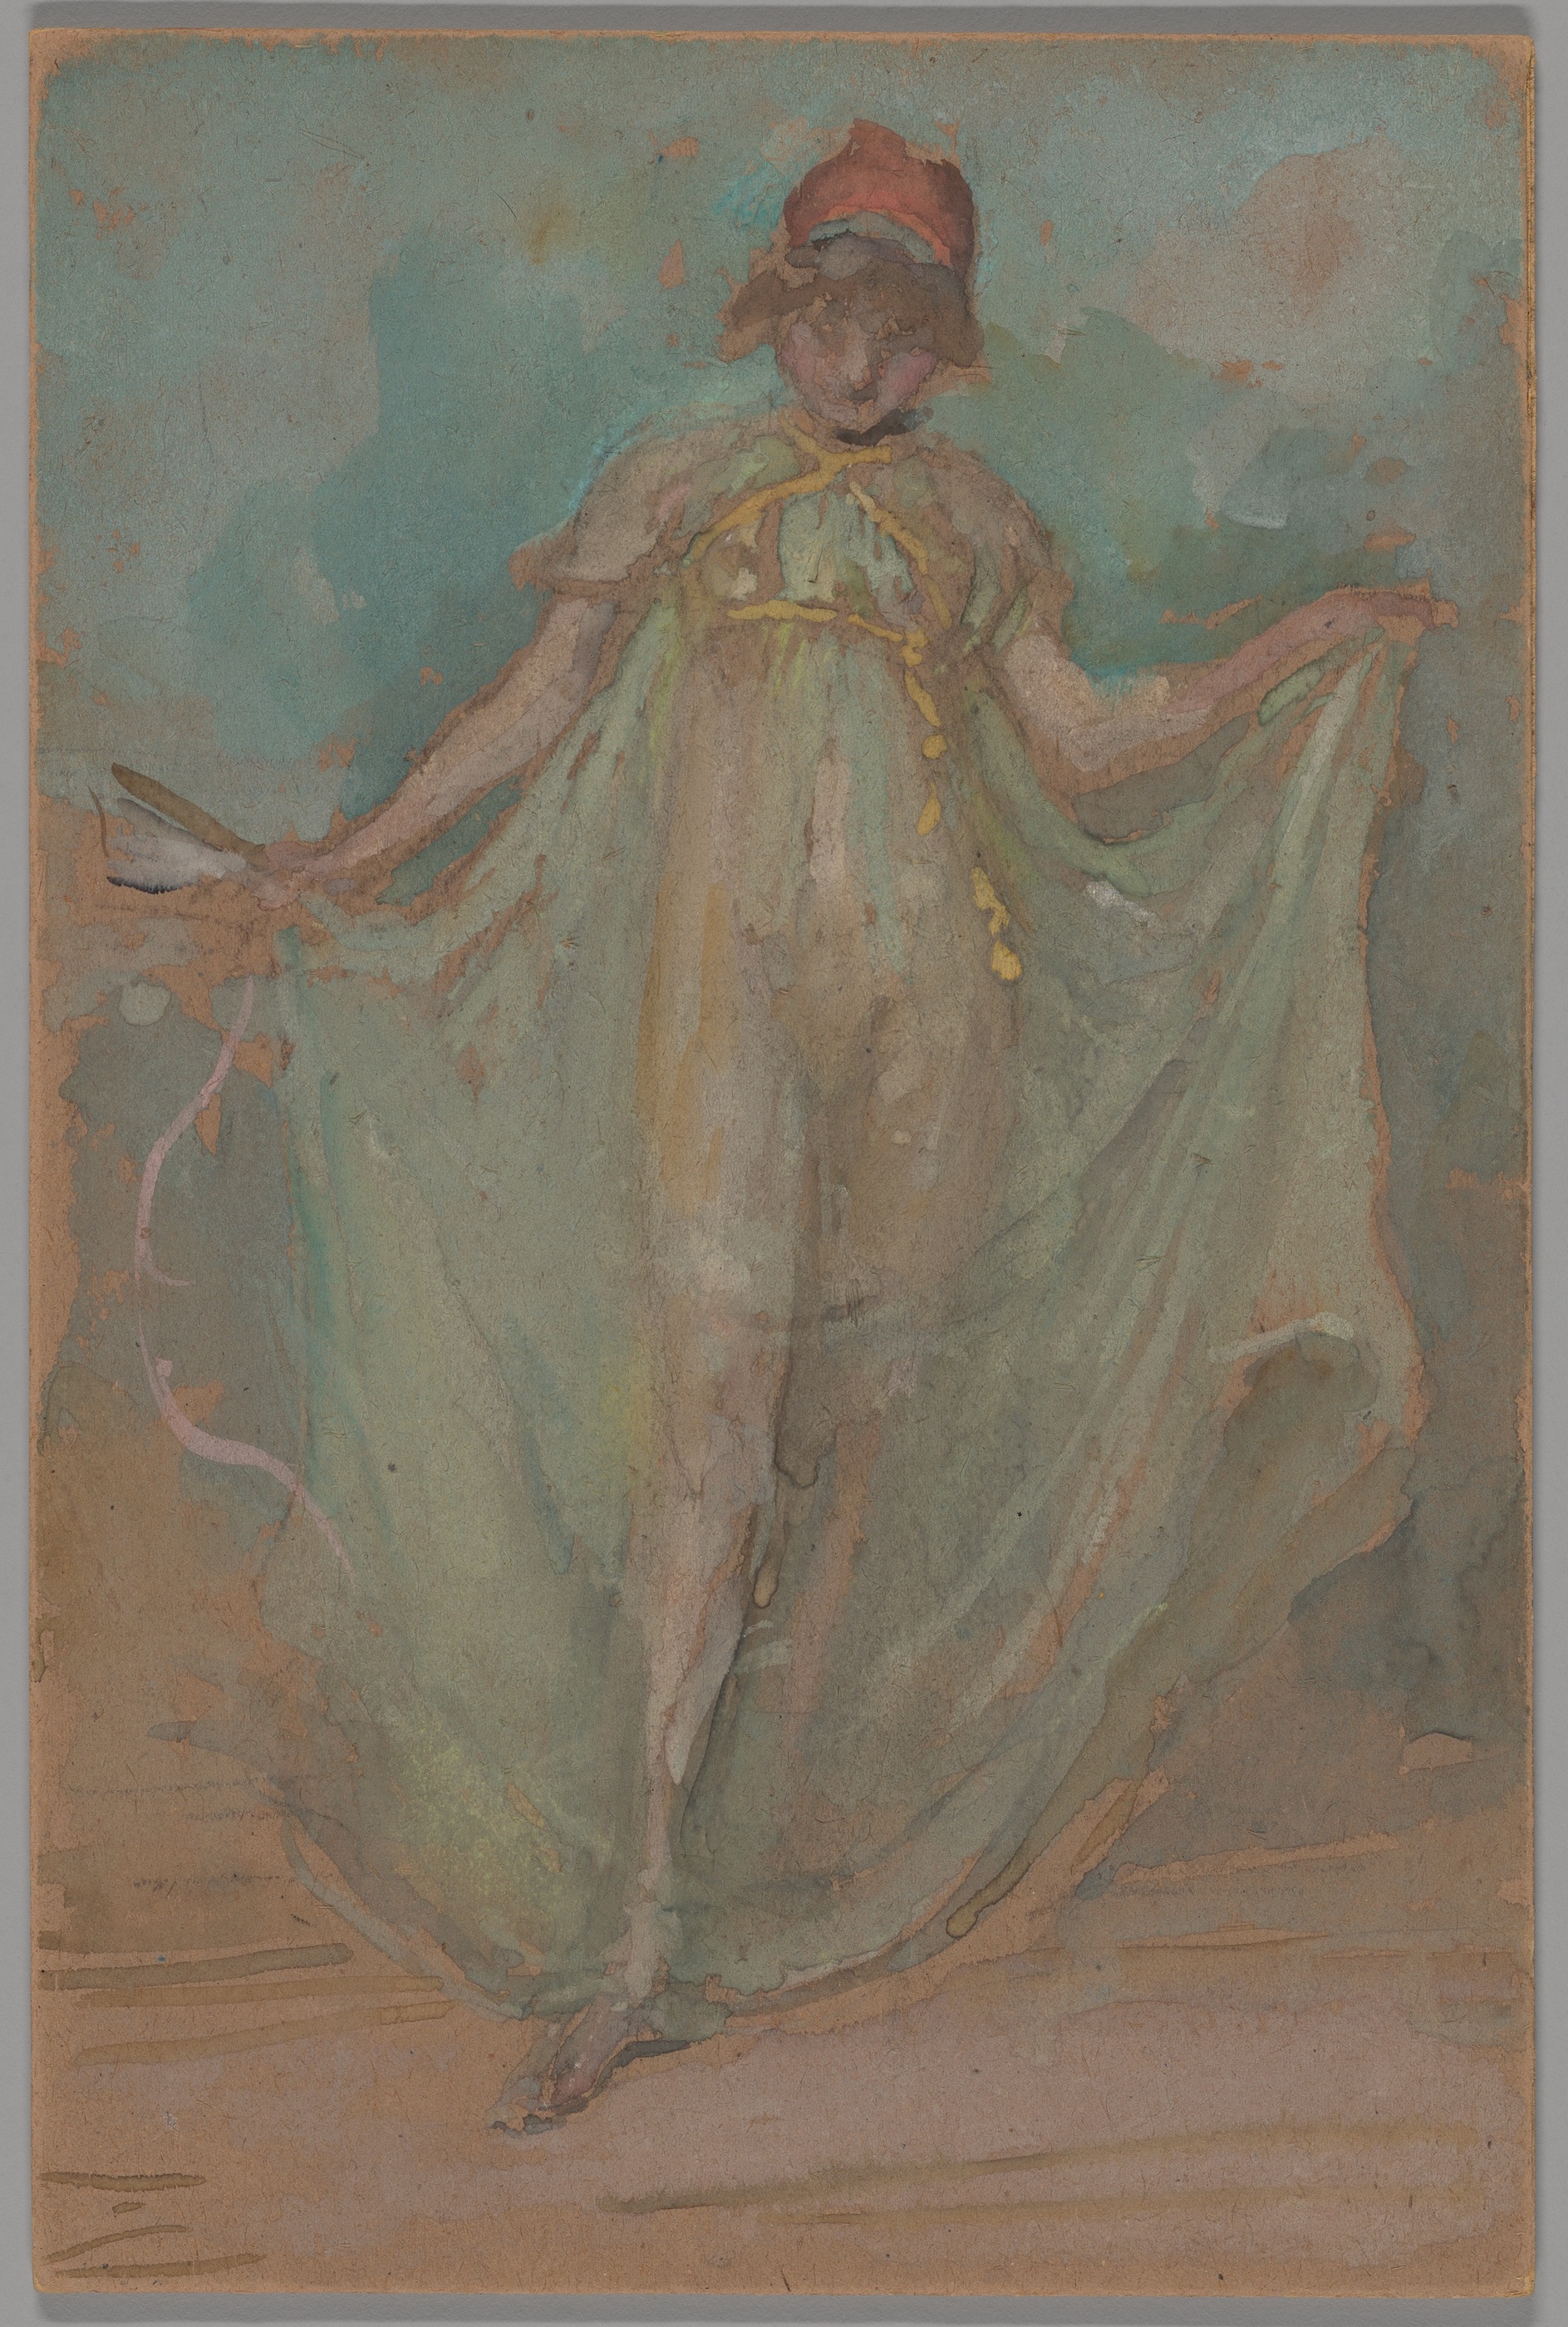 Verde și albastru: Dansatoarea by James Abbott McNeill Whistler - cca. 1893 - 27,5 × 18.3 cm 